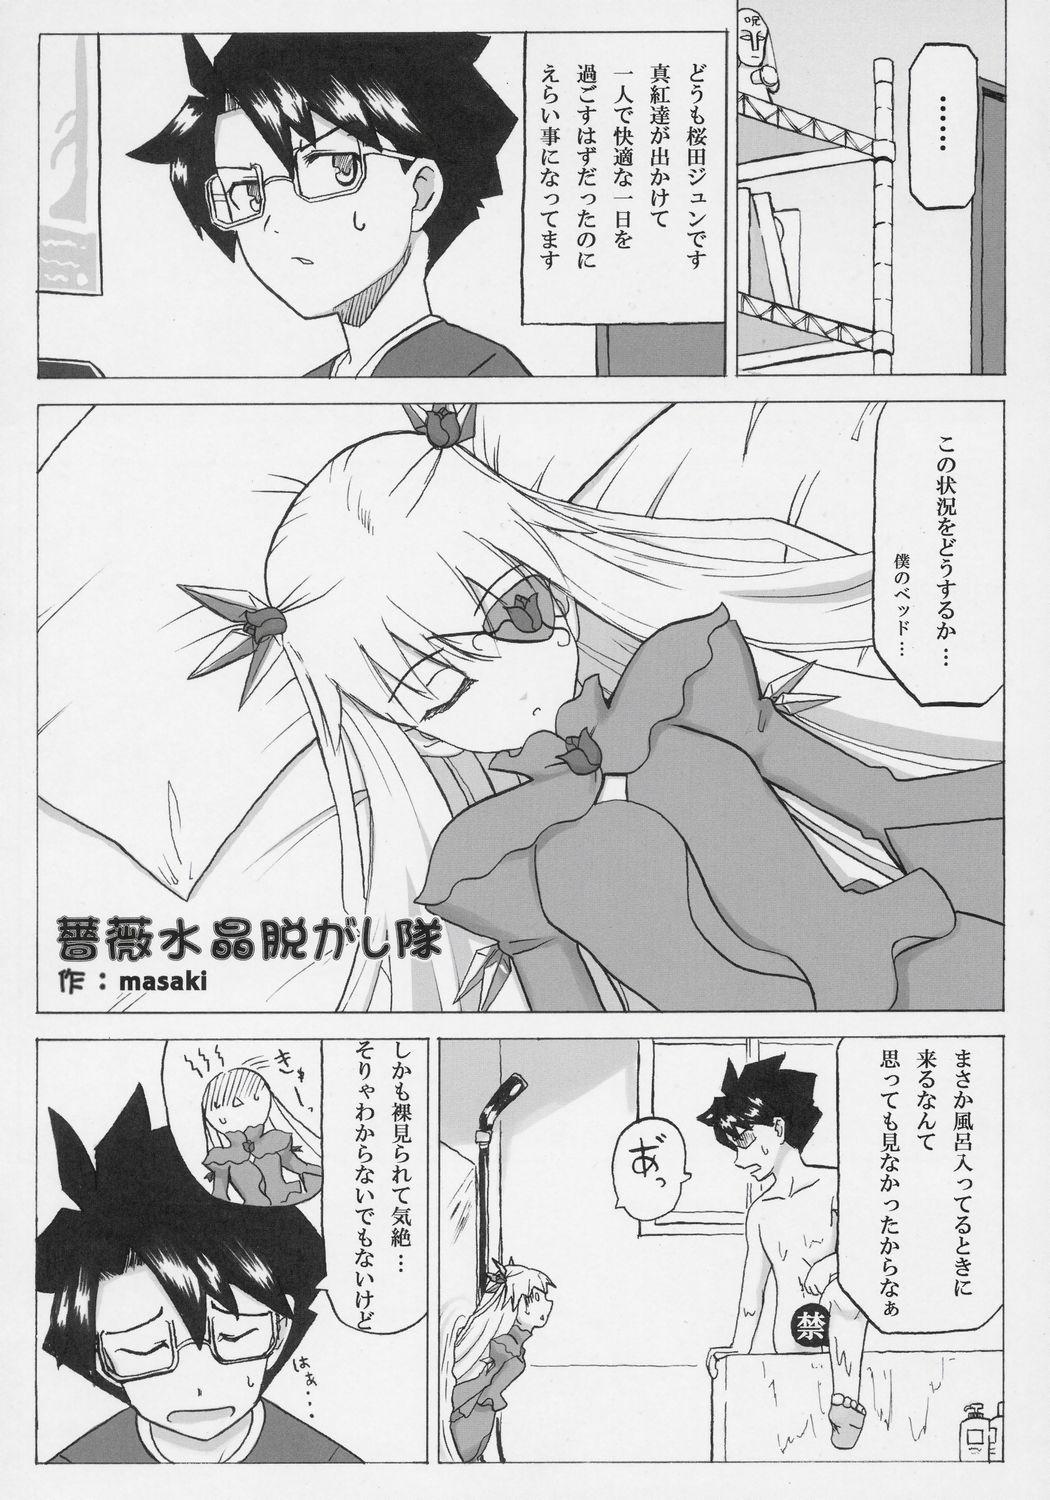 19yo - Barabara wo okashitai no hon - Rozen maiden Gaysex - Page 7